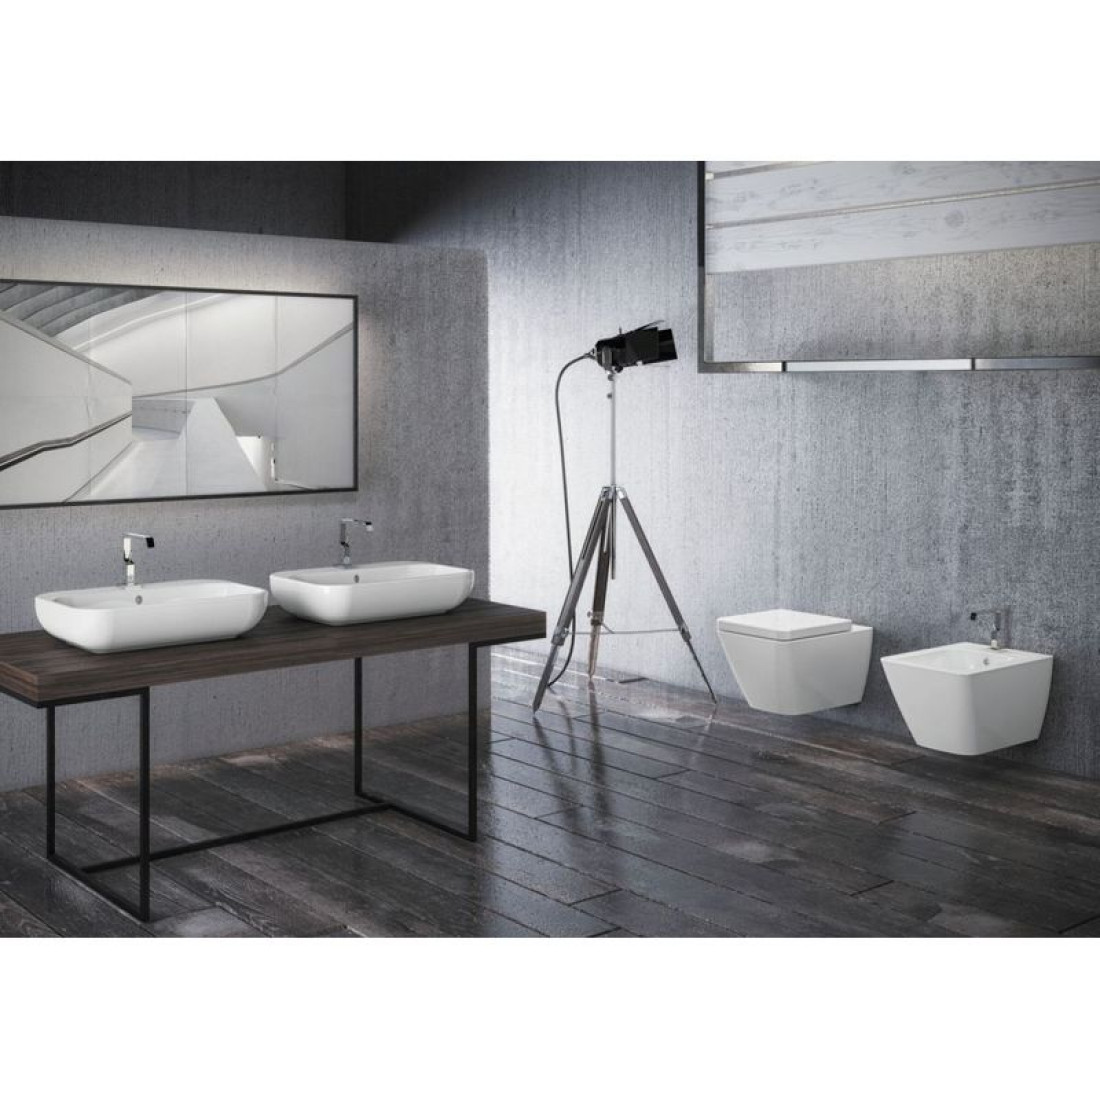 Ceramika sanitarna Touch 3 - dotyk nowoczesności przedstawia firma Coram